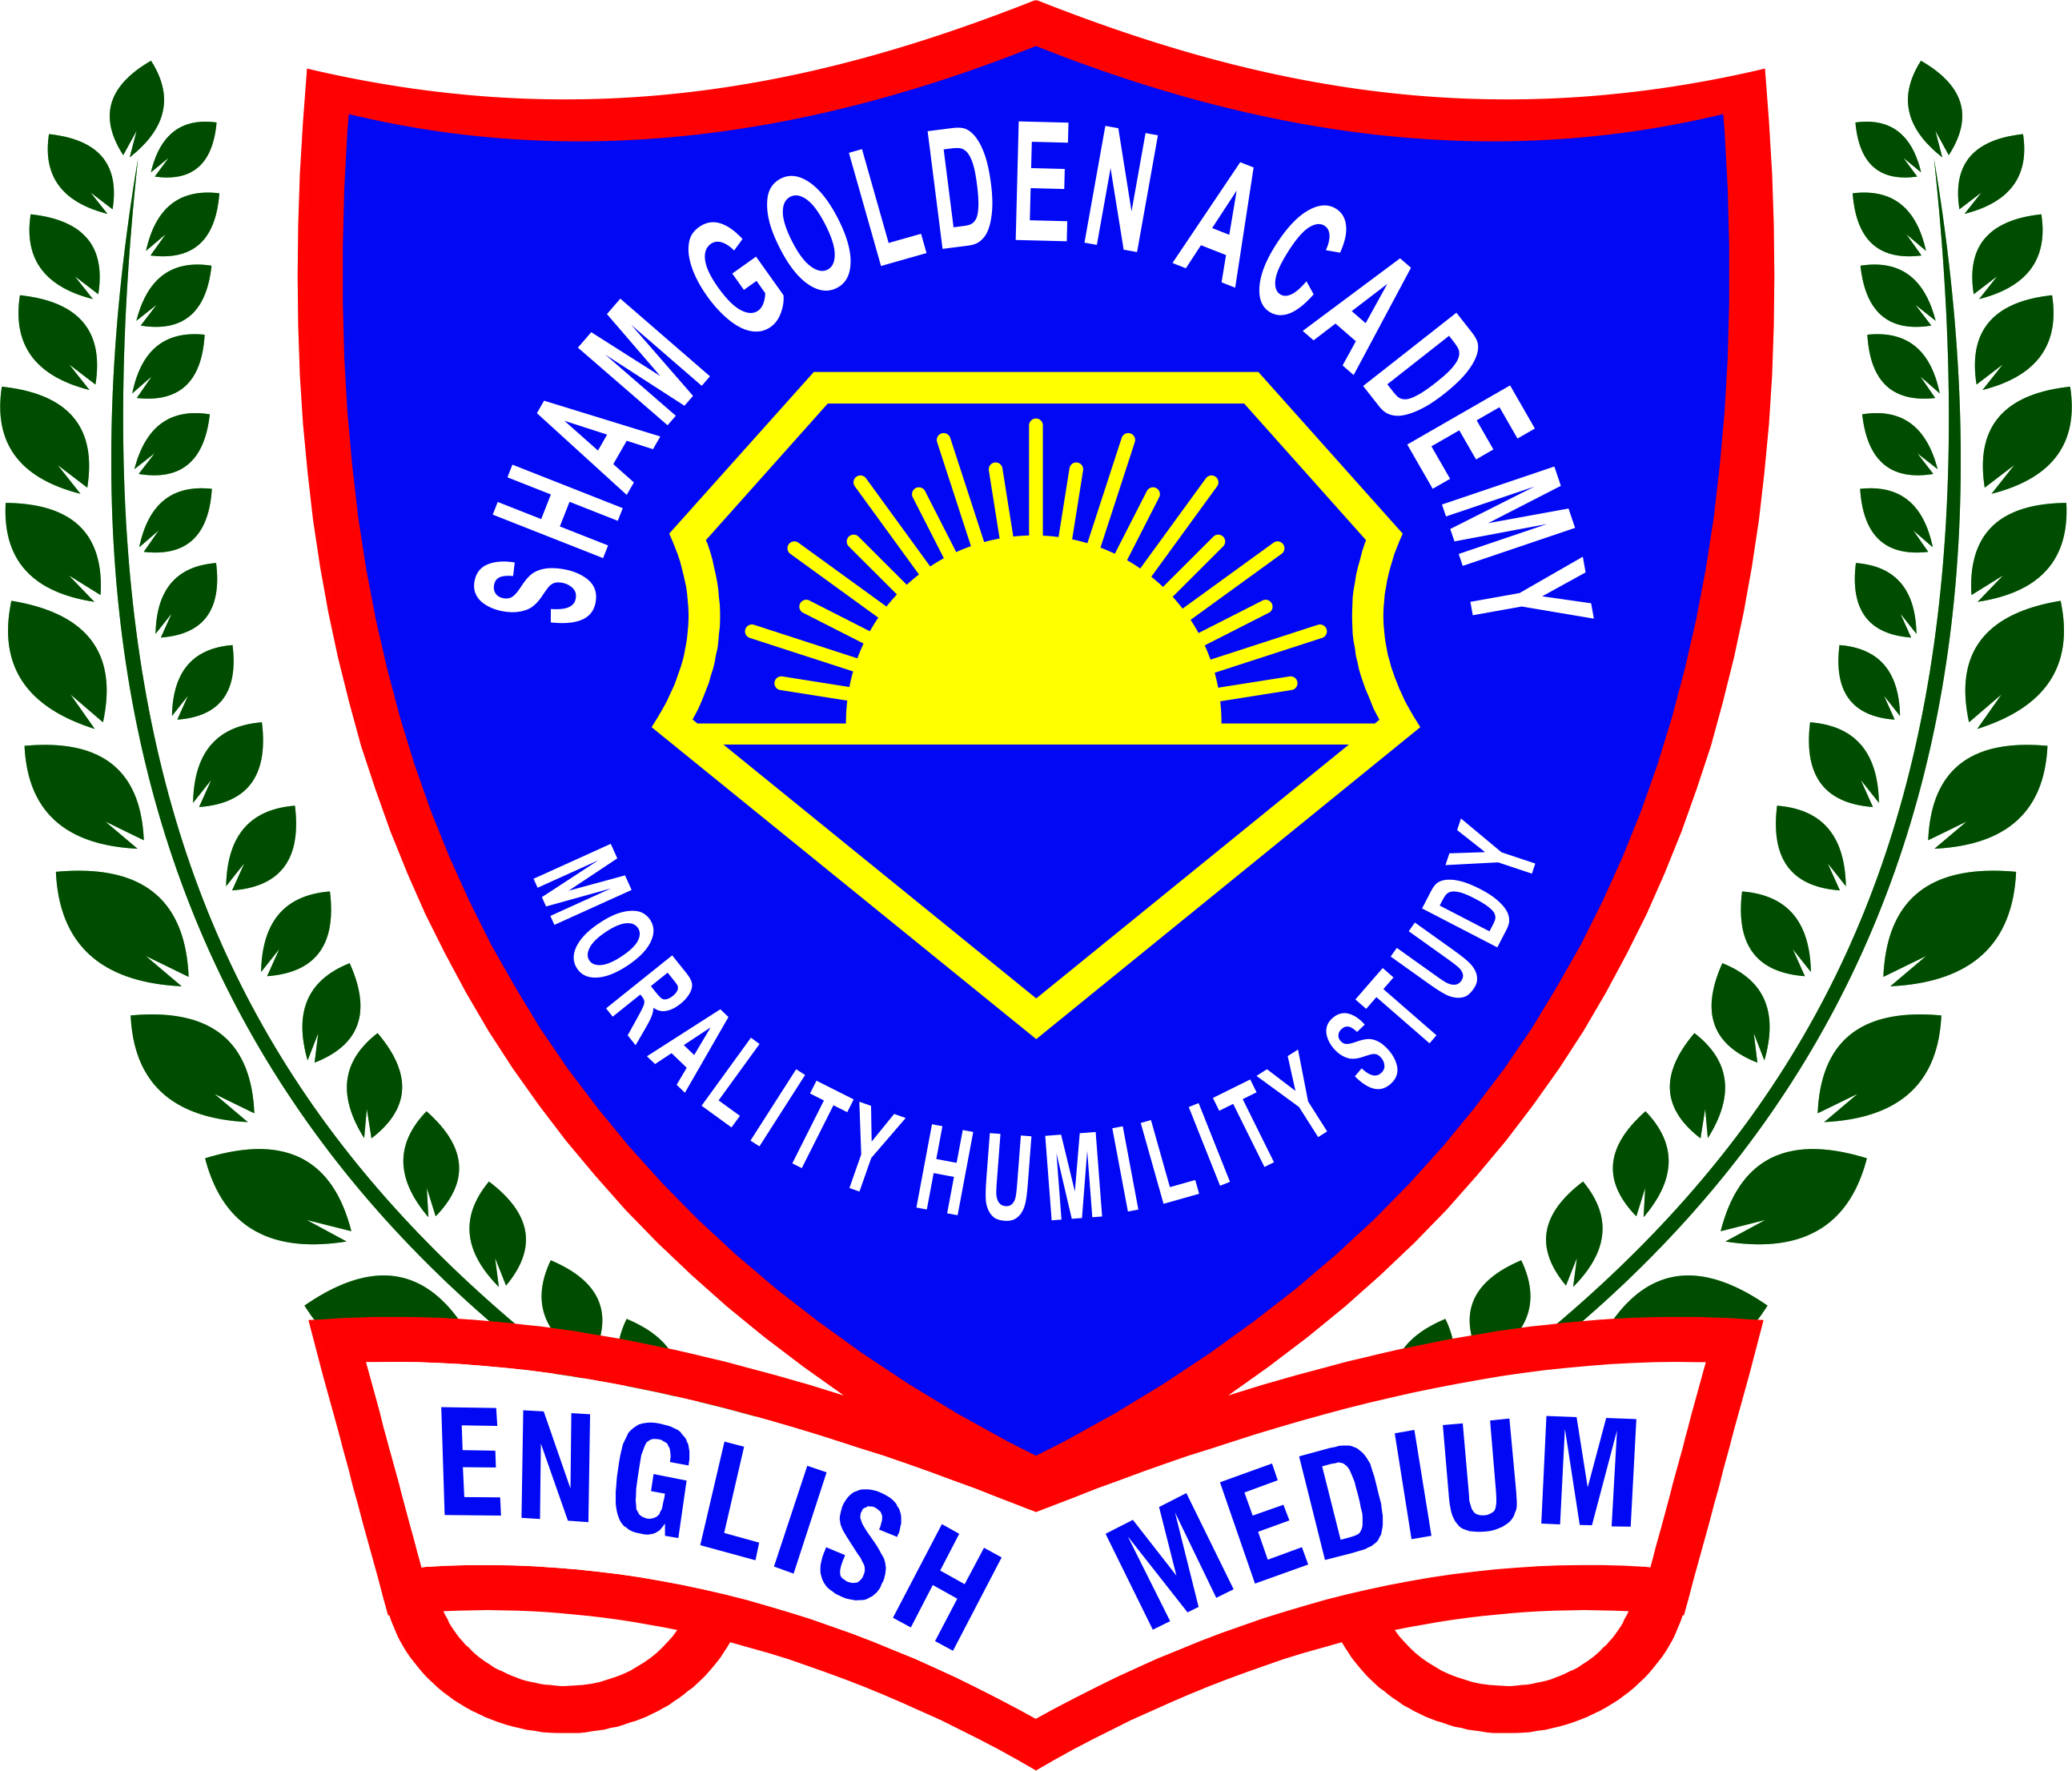 Sham Golden Academy